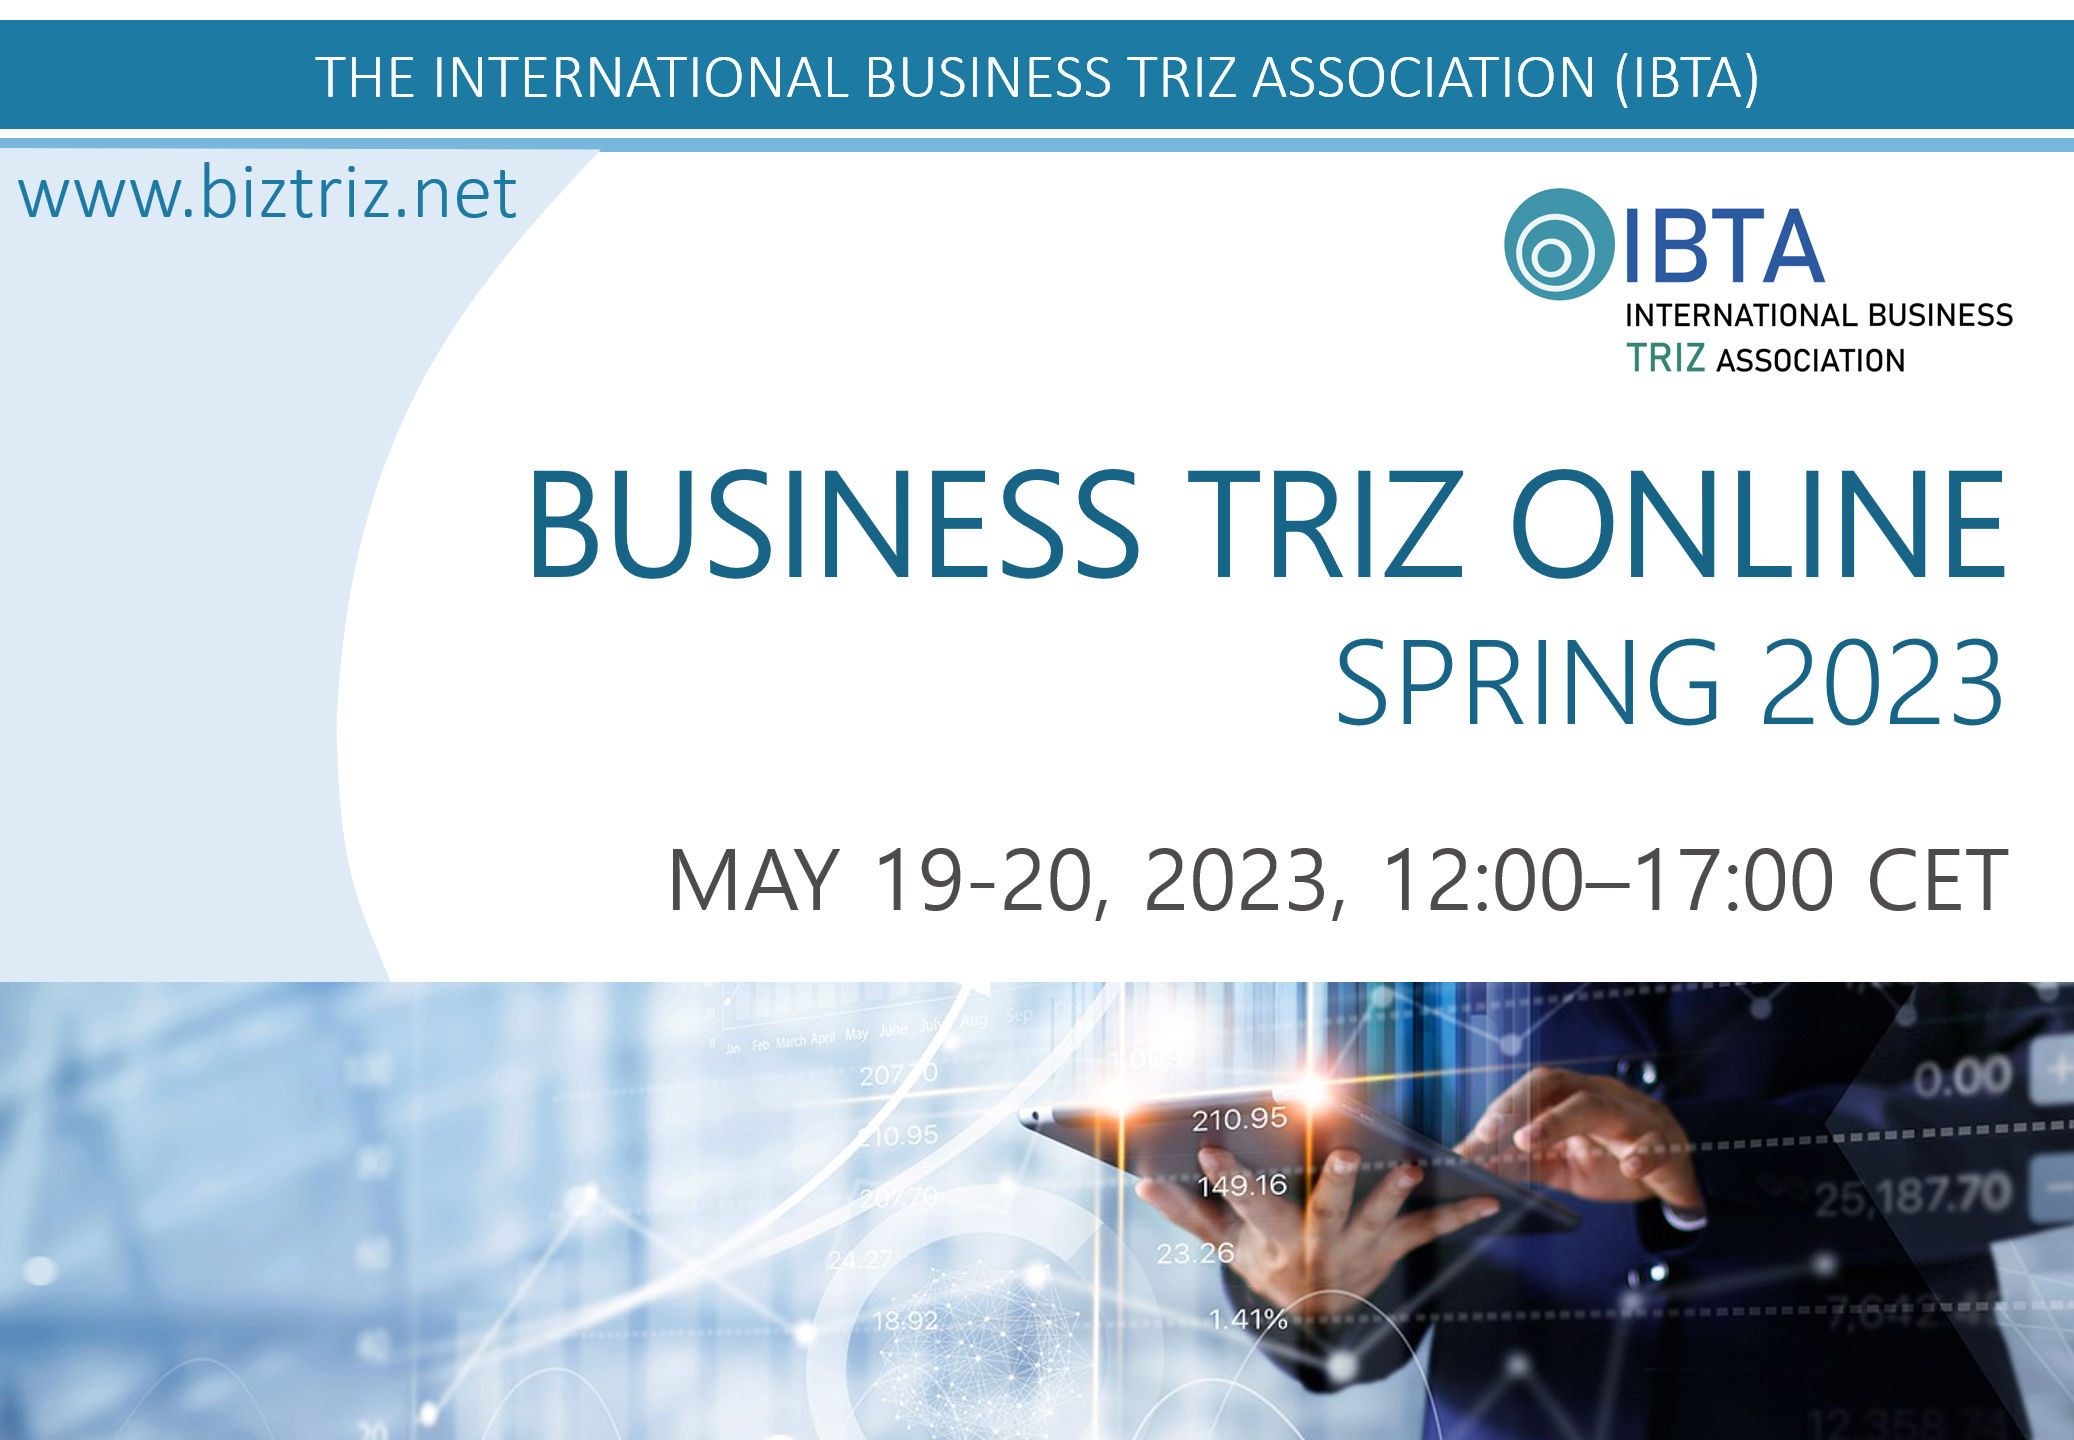 BUSINESS TRIZ ONLINE - SPRING 2023 Conference